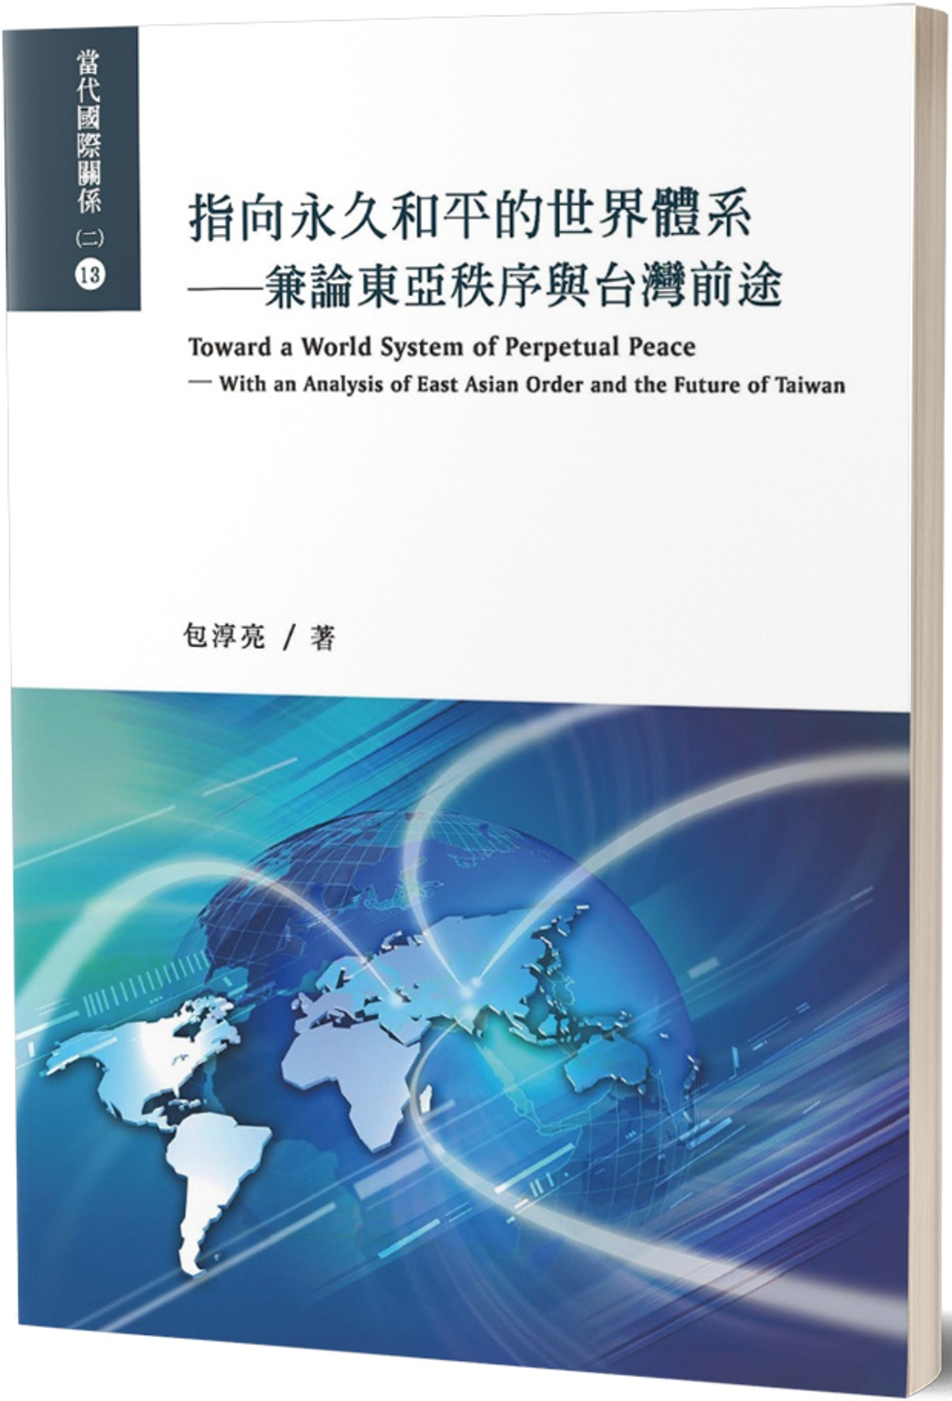 指向永久和平的世界體系：兼論東亞秩序與台灣前途